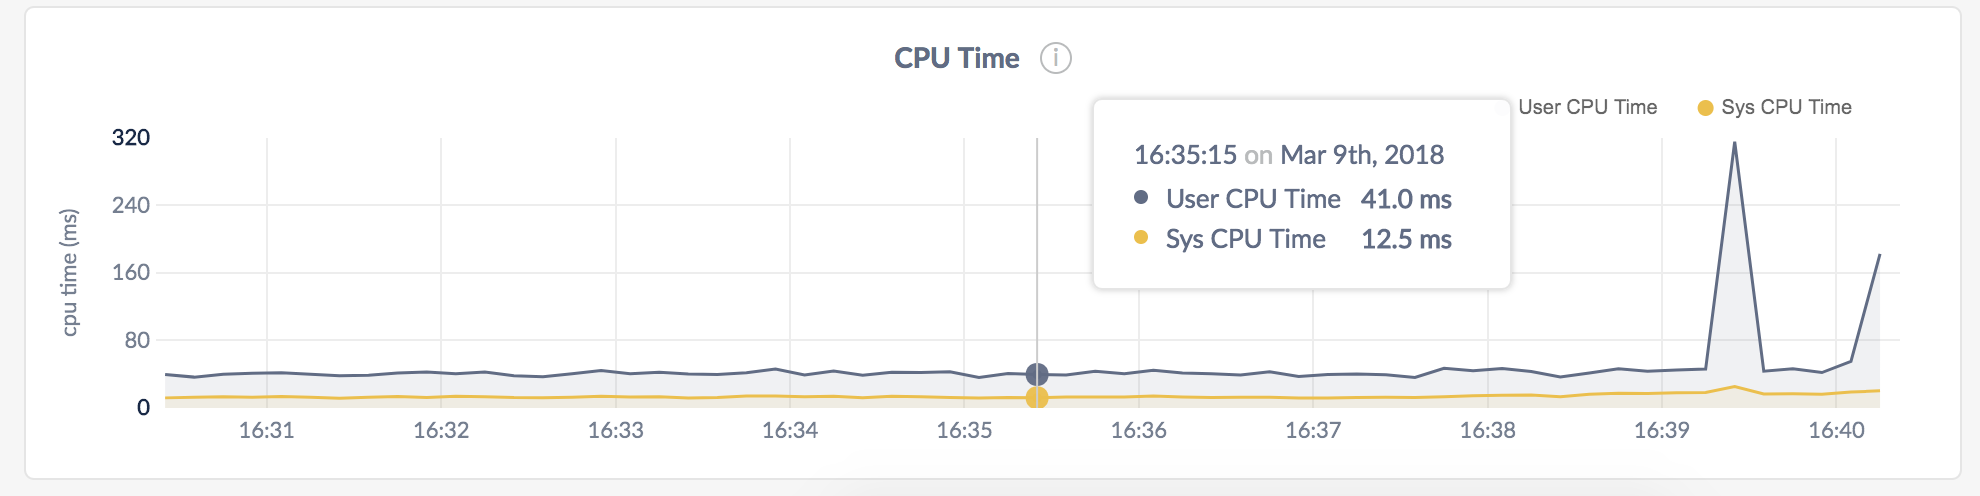 CockroachDB Admin UI CPU Time